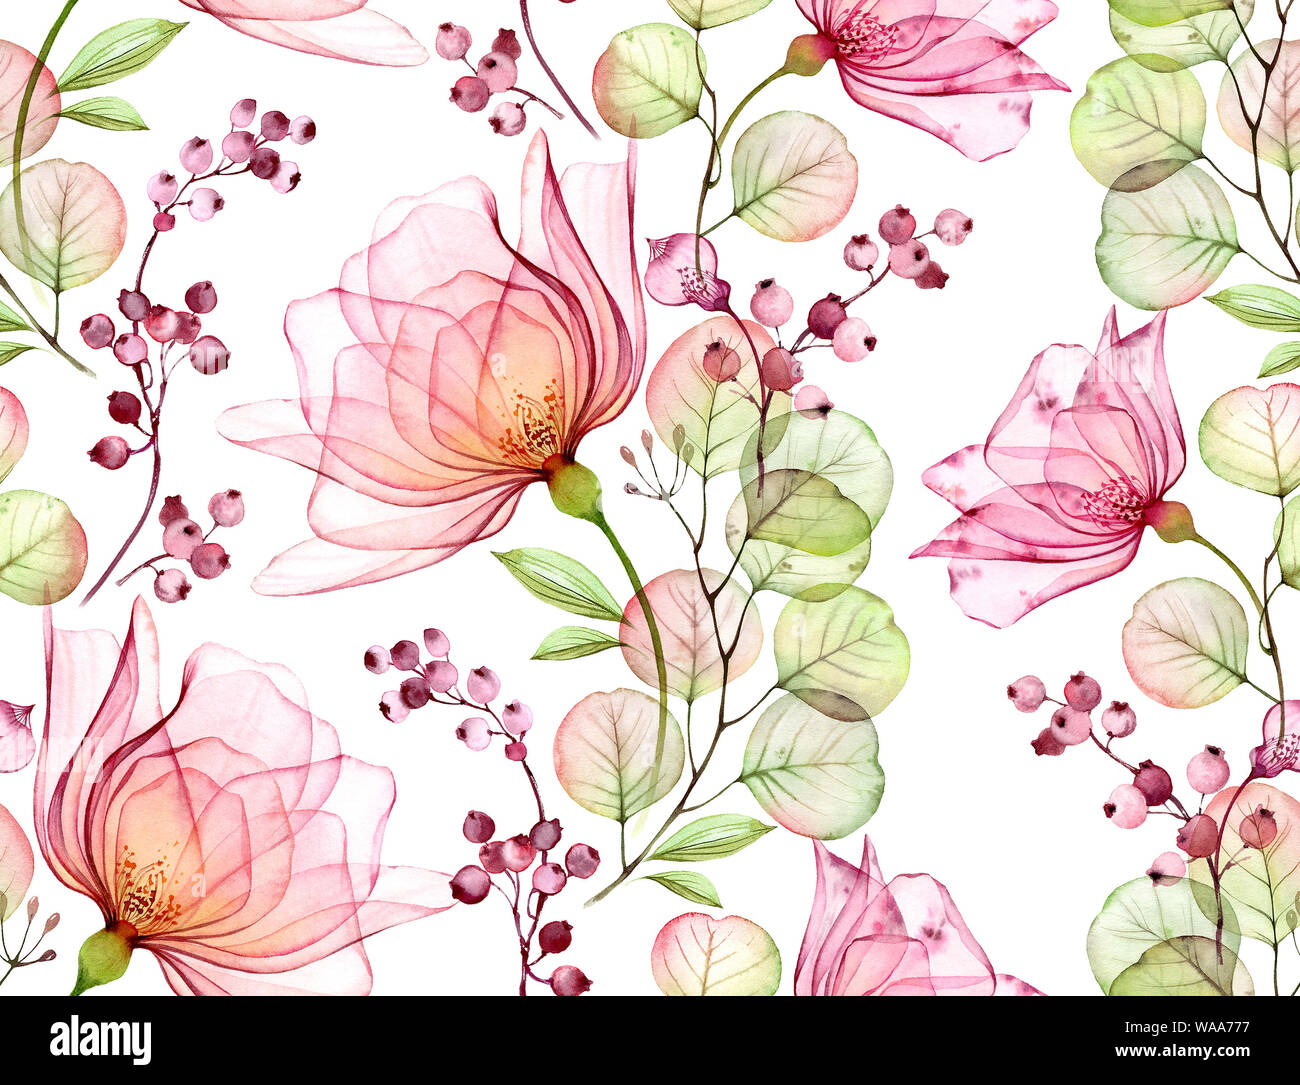 Acquerello trasparente rosa. Seamless motivo floreale. Isolati disegnati a mano con grandi fiori, eucalipto e bacche per wallpaper design, tessile Foto Stock